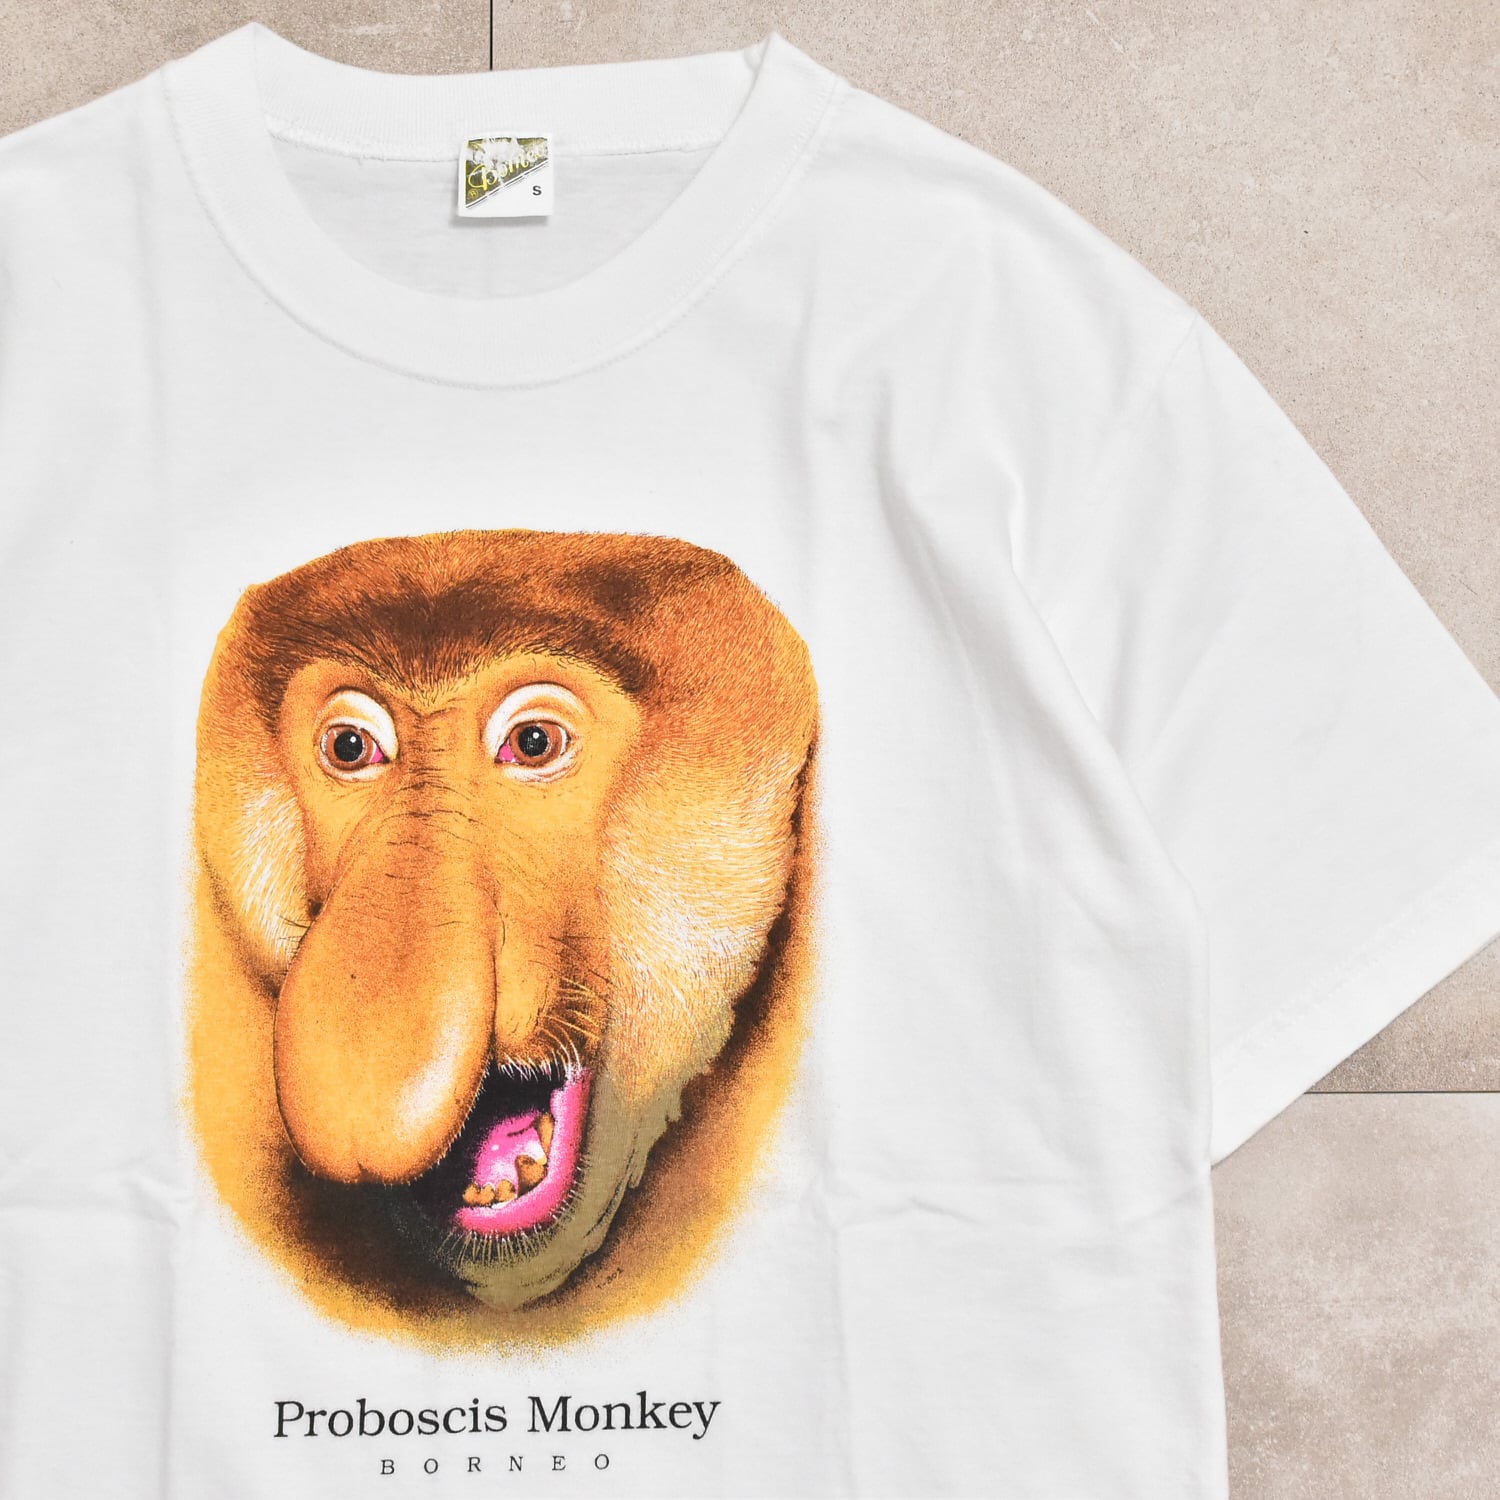 00s Proboscis Monkey T-shirt